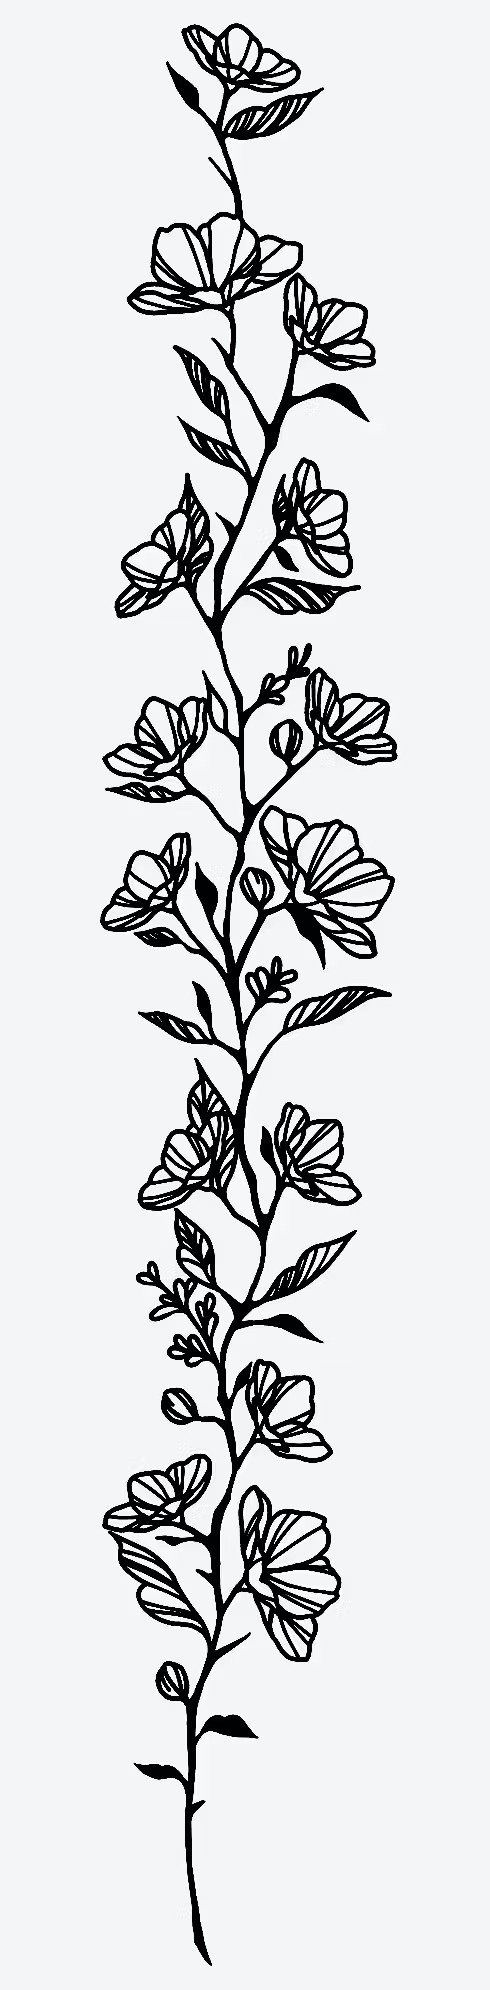 花朵图案纹身贴